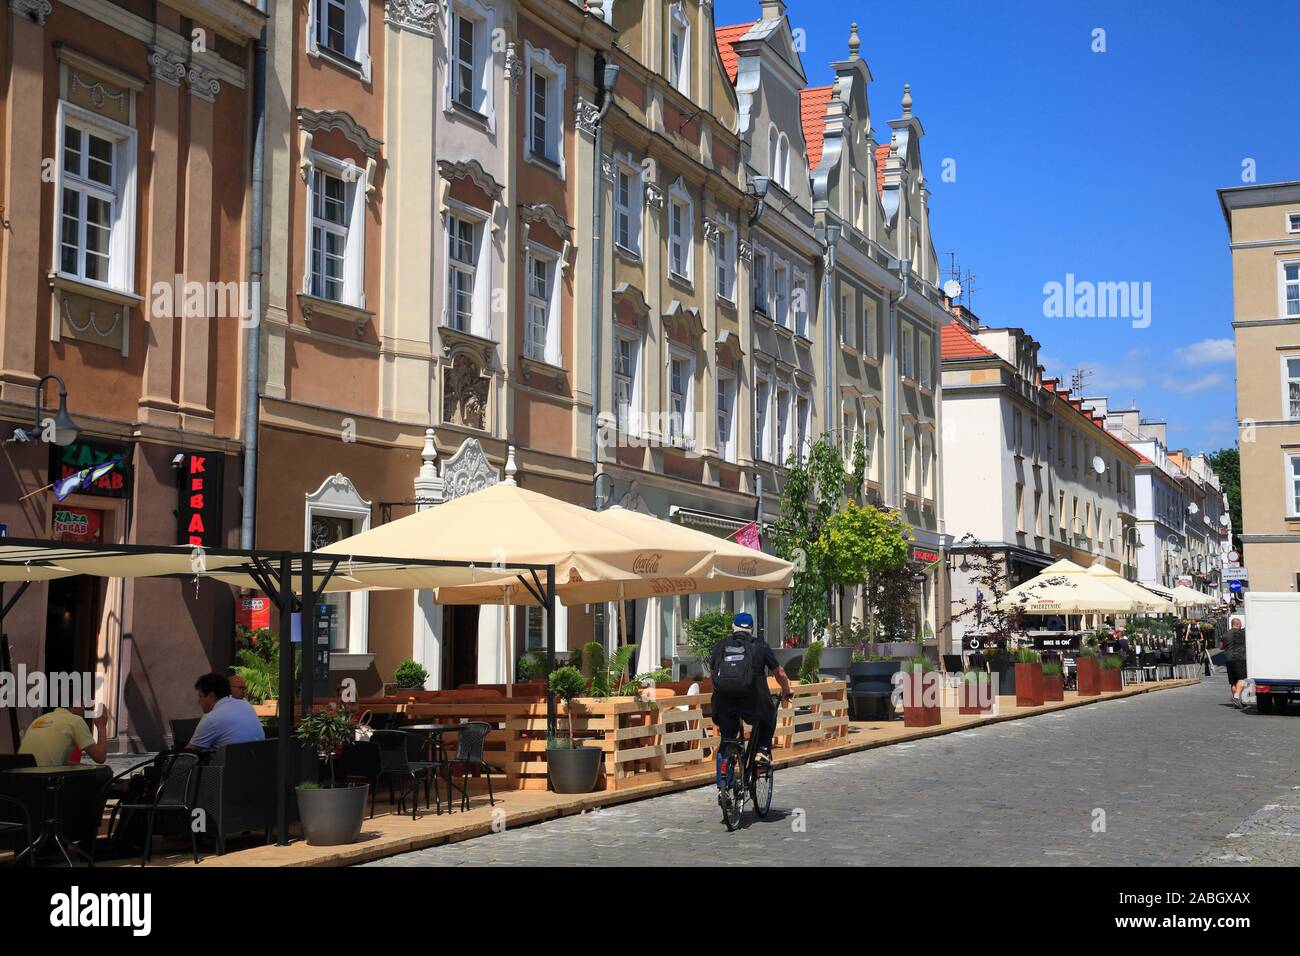 Houses at market square Rynek, Opole, Silesia, Poland, Europe Stock Photo